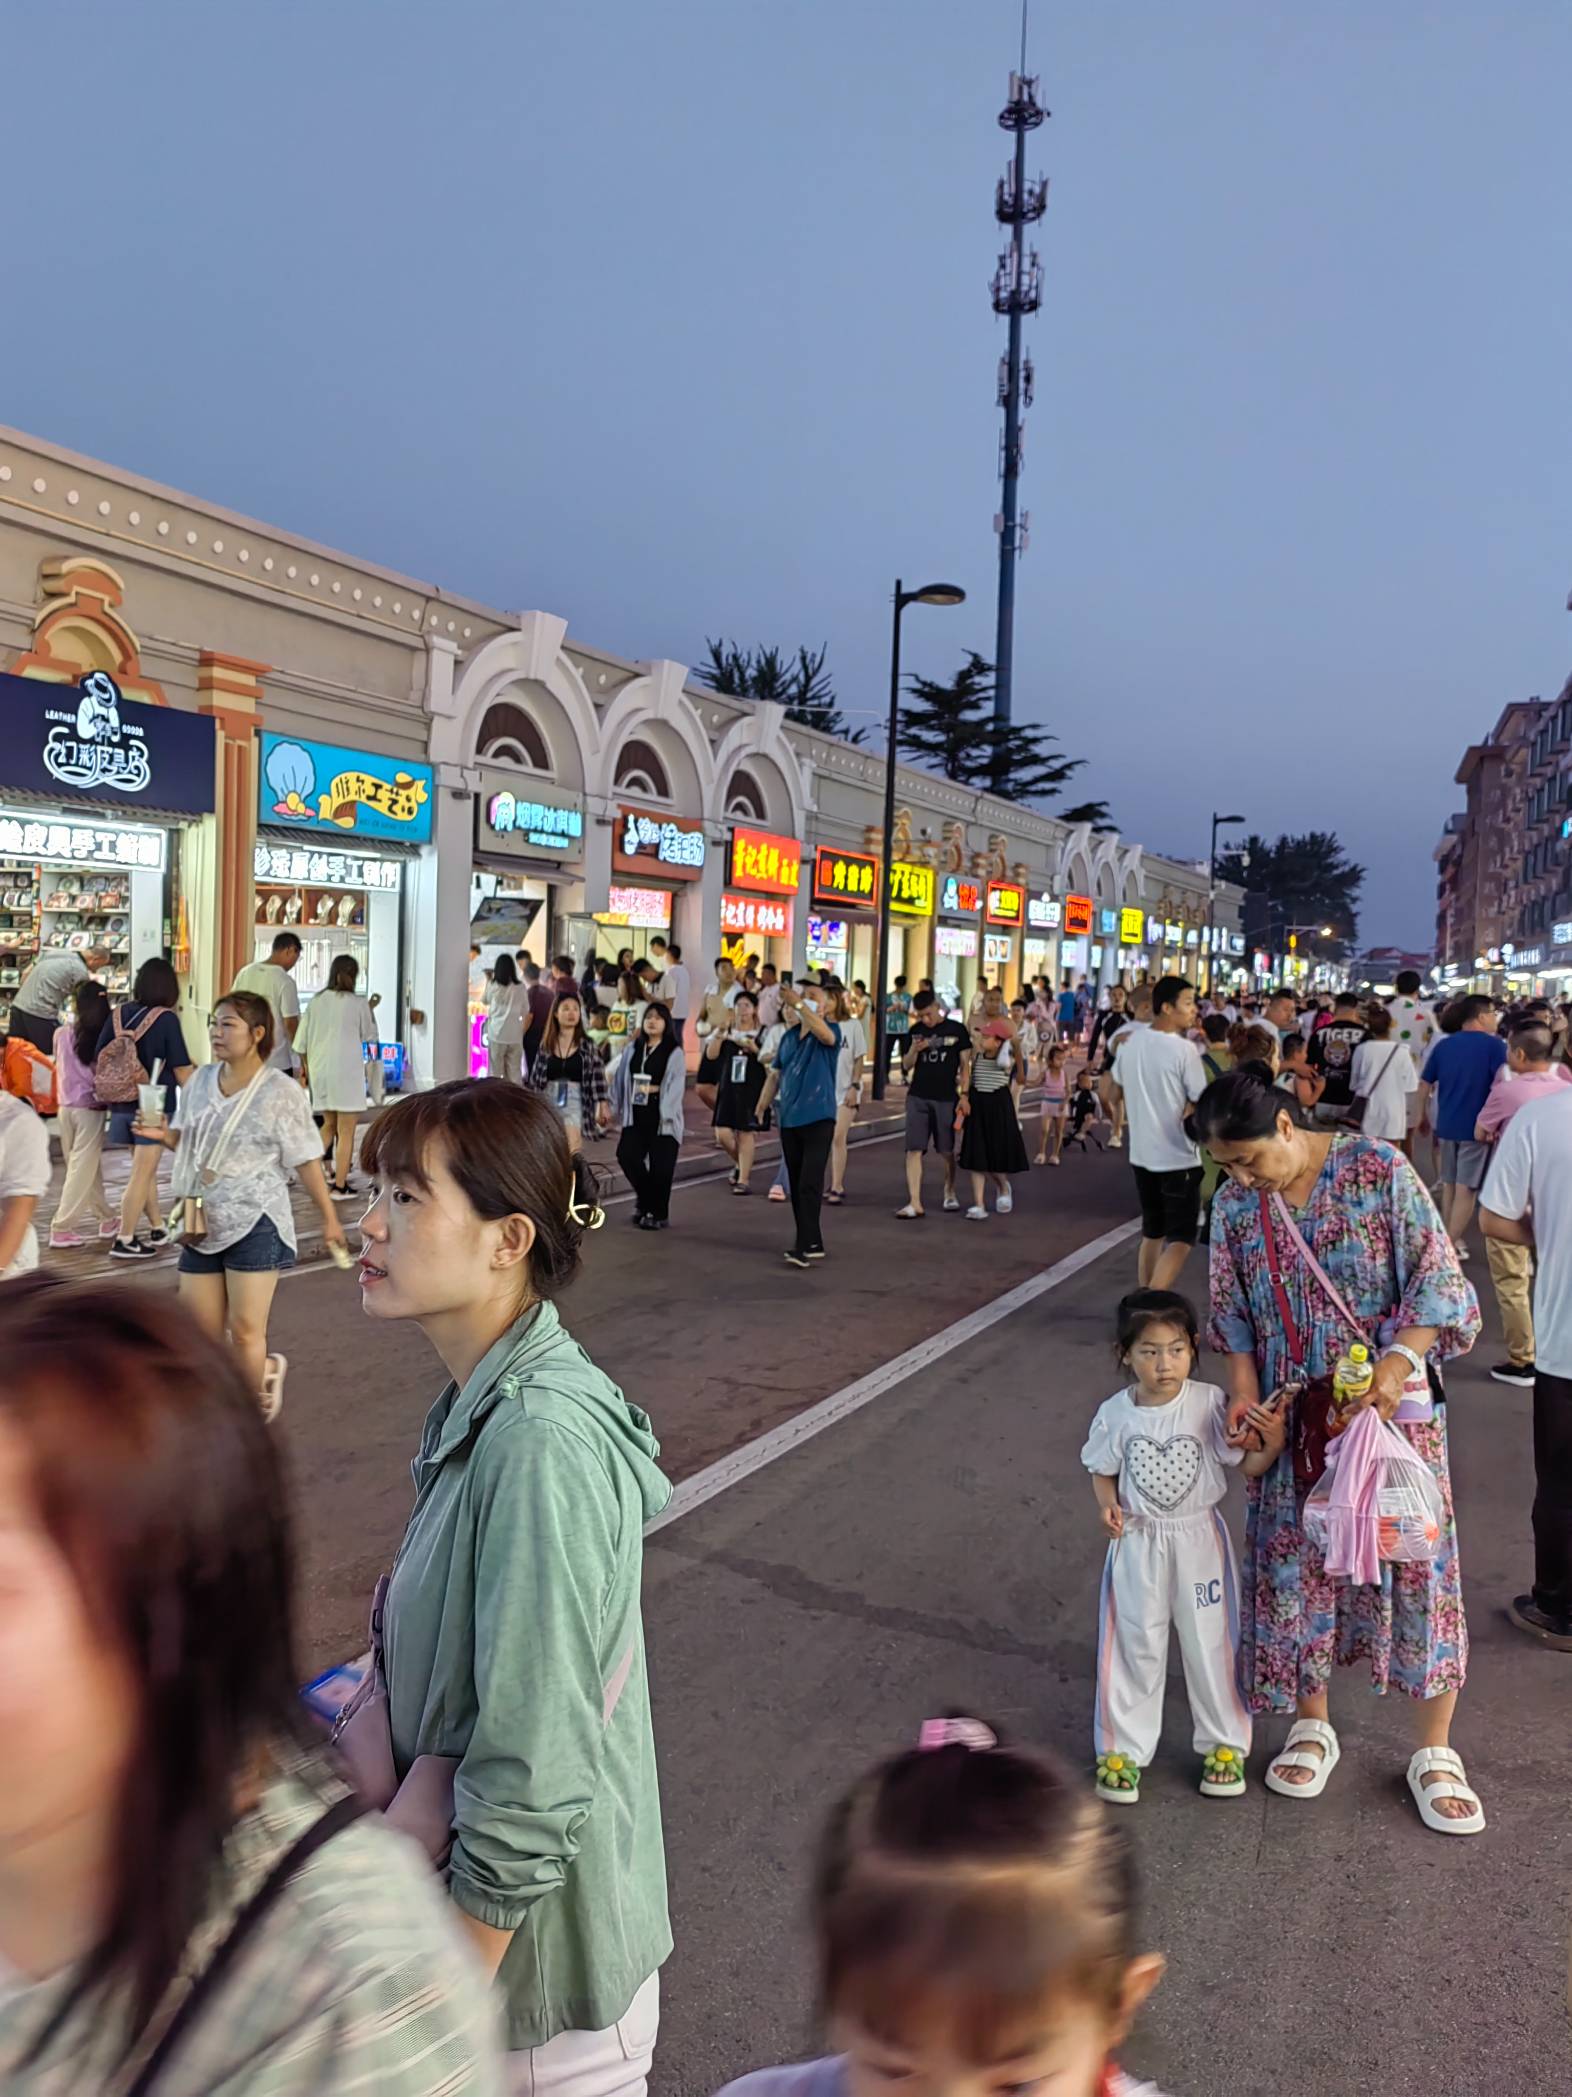 刘庄夜市图片